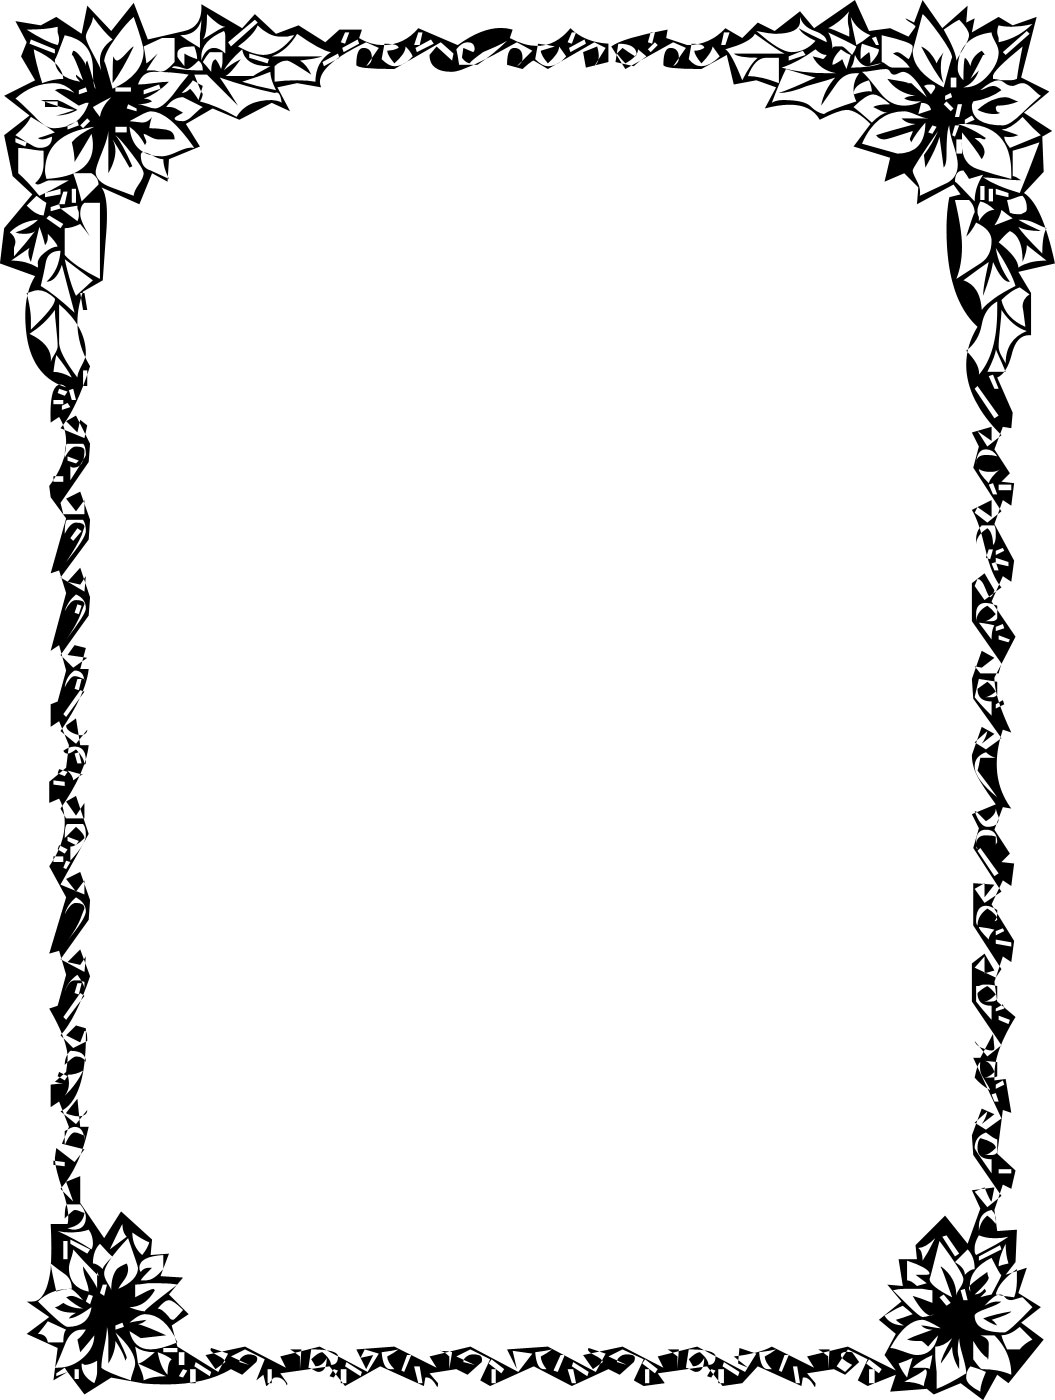 白黒 モノクロの花のイラスト フリー素材 フレーム枠no 804 白黒 四隅花